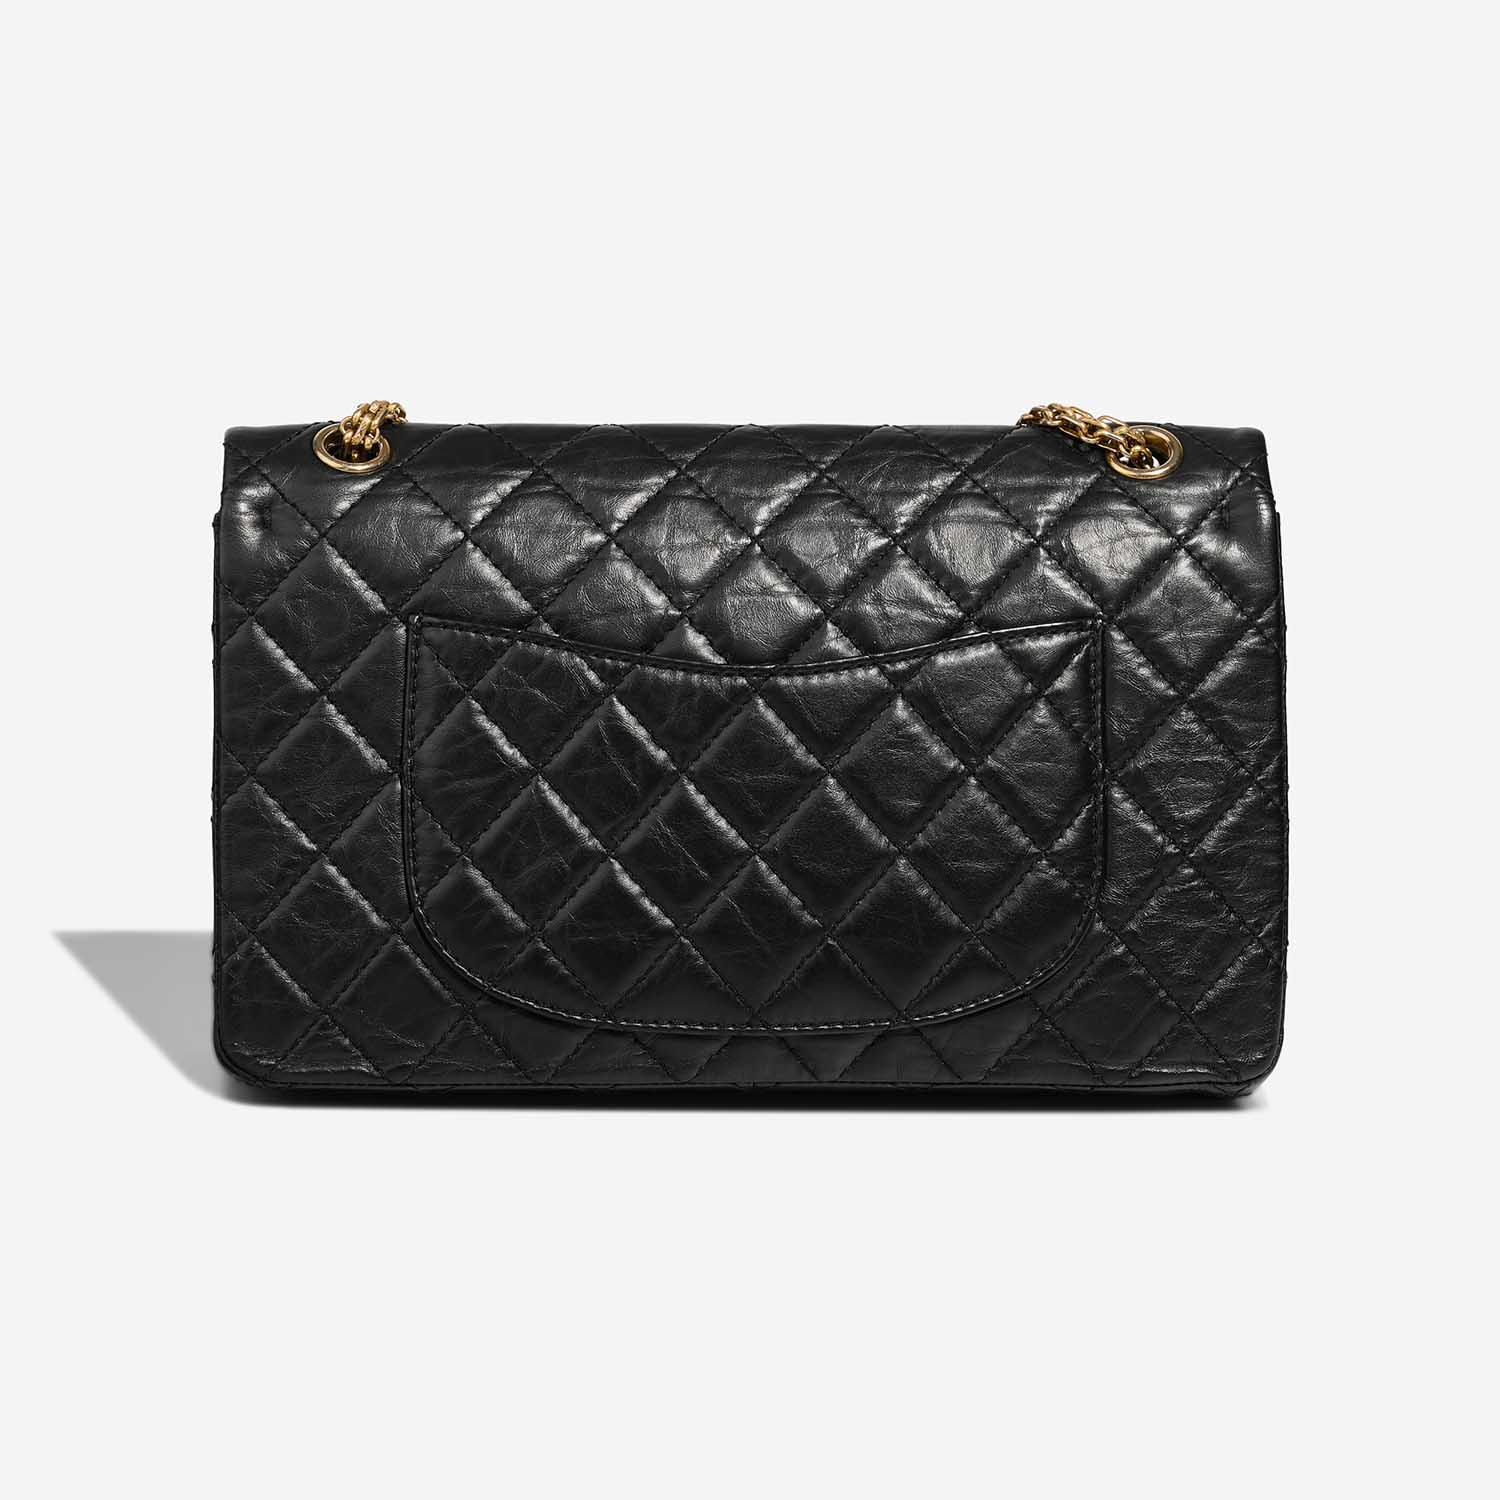 Chanel 255 226 Black Back | Verkaufen Sie Ihre Designer-Tasche auf Saclab.com